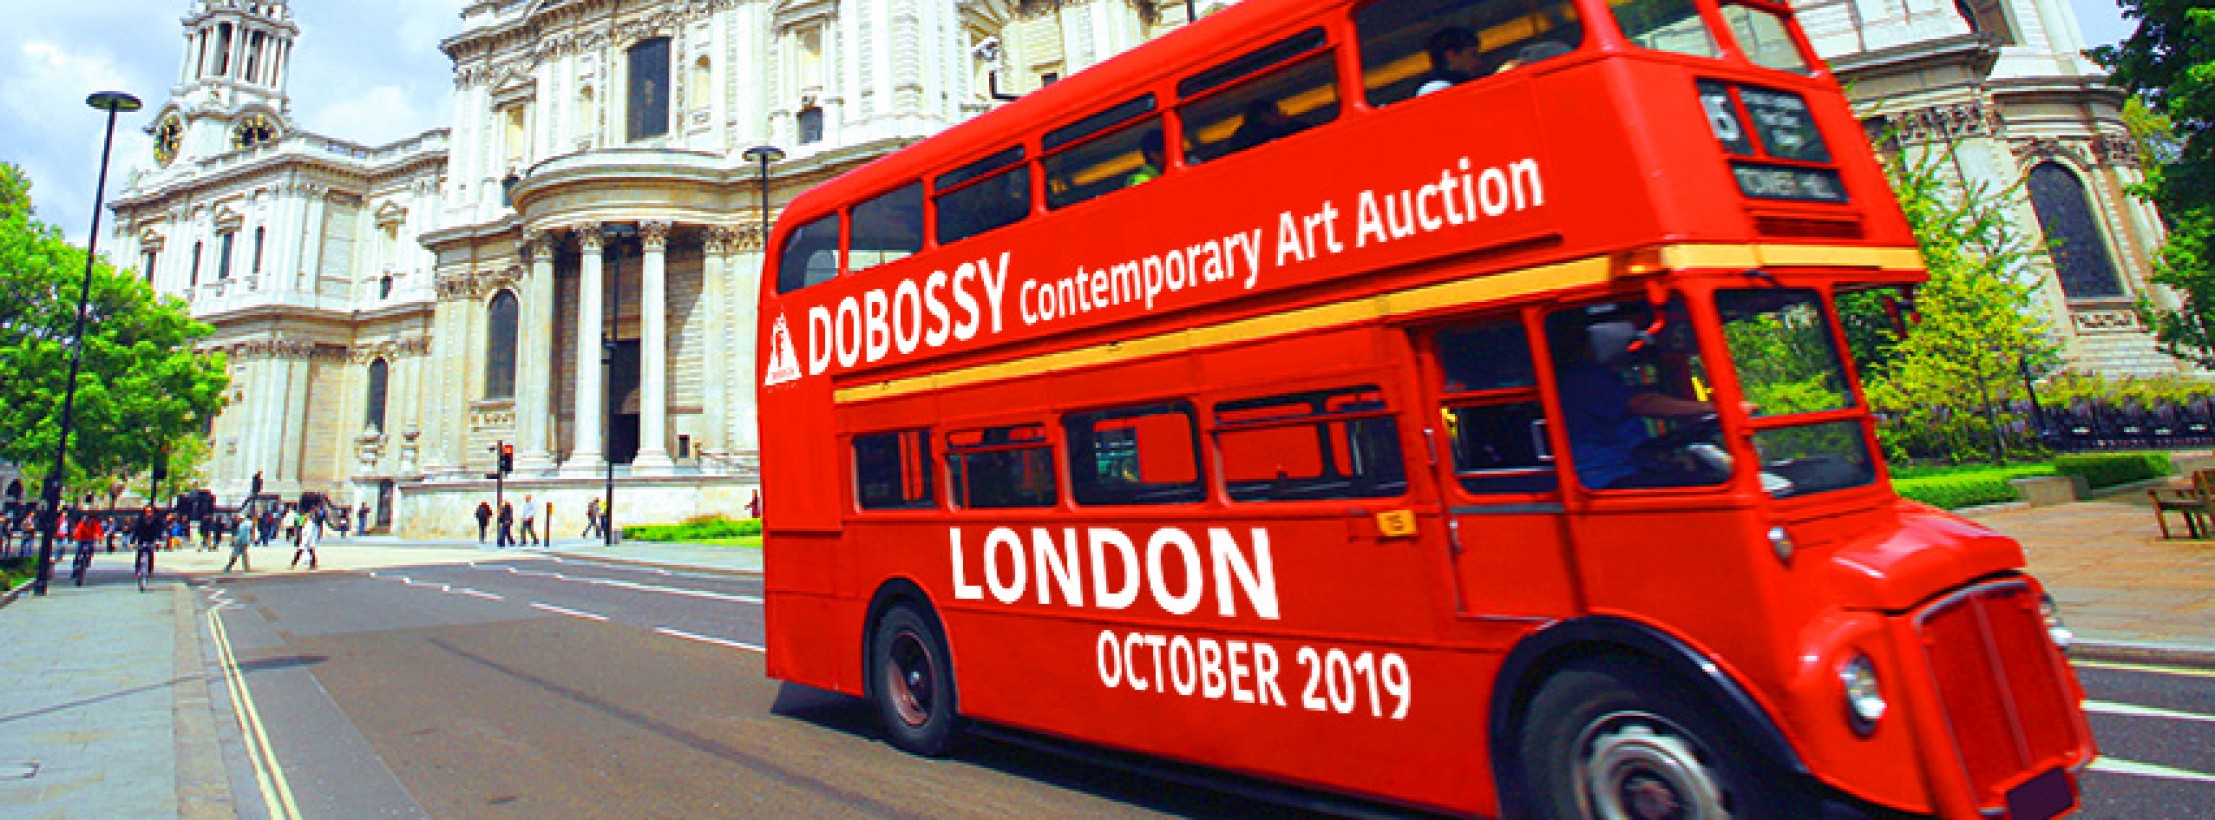 Kizárólag kortárs magyar művekből rendeznek aukciót Londonban